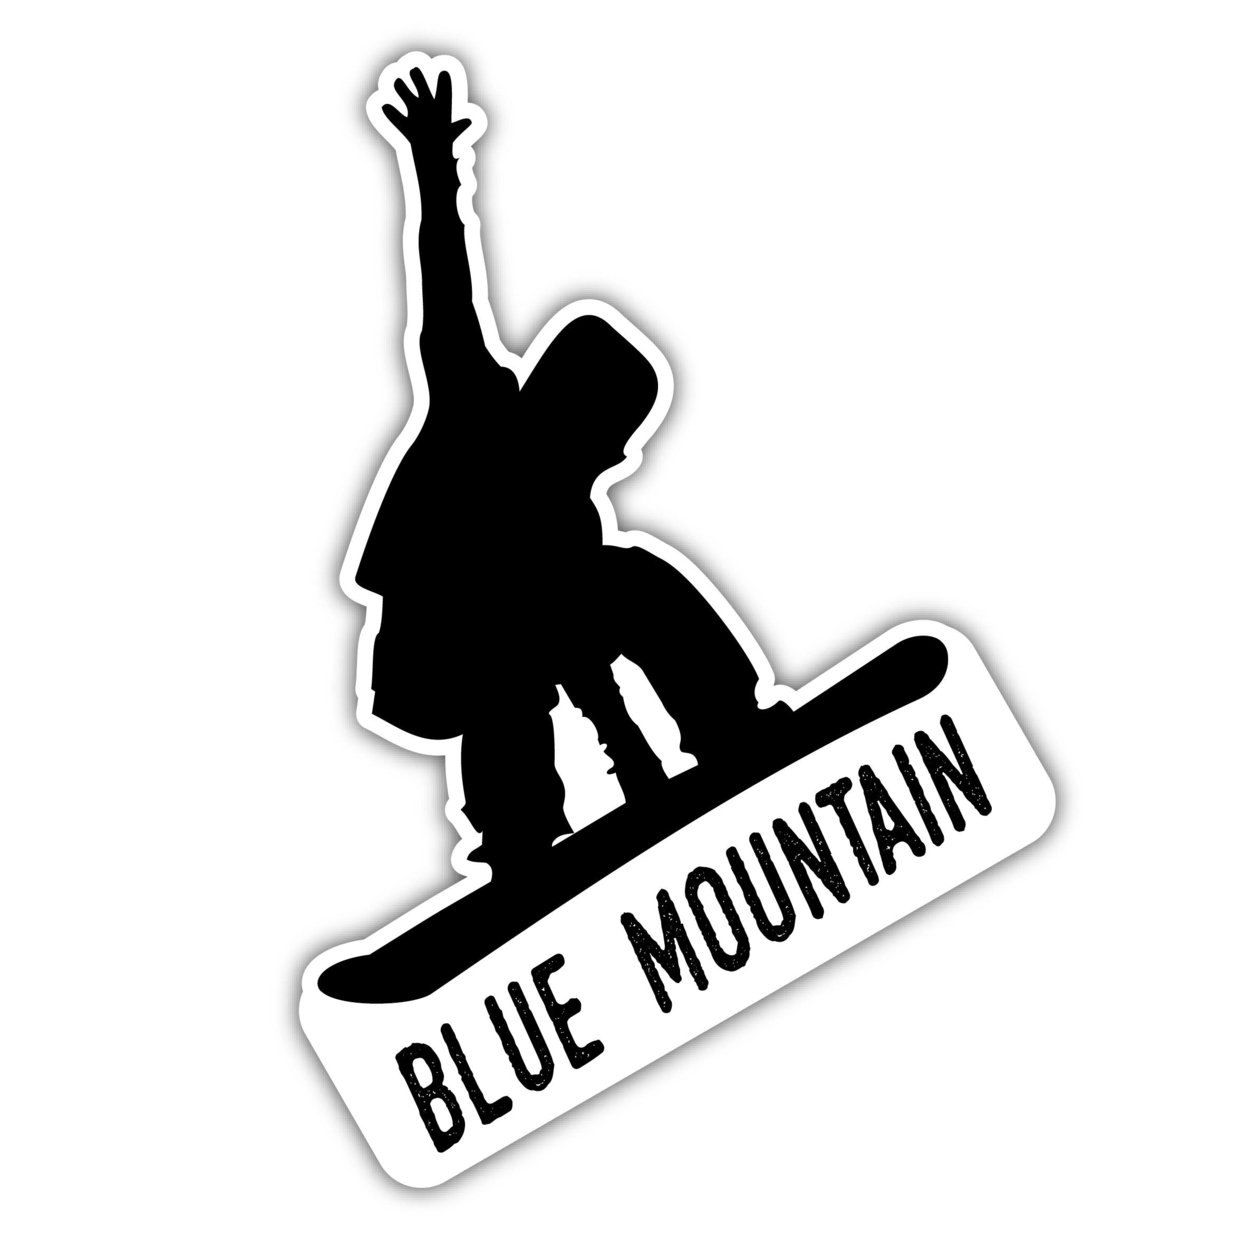 Blue Mountain Pennsylvania Ski Adventures Souvenir 4 Inch Vinyl Decal Sticker Board Design